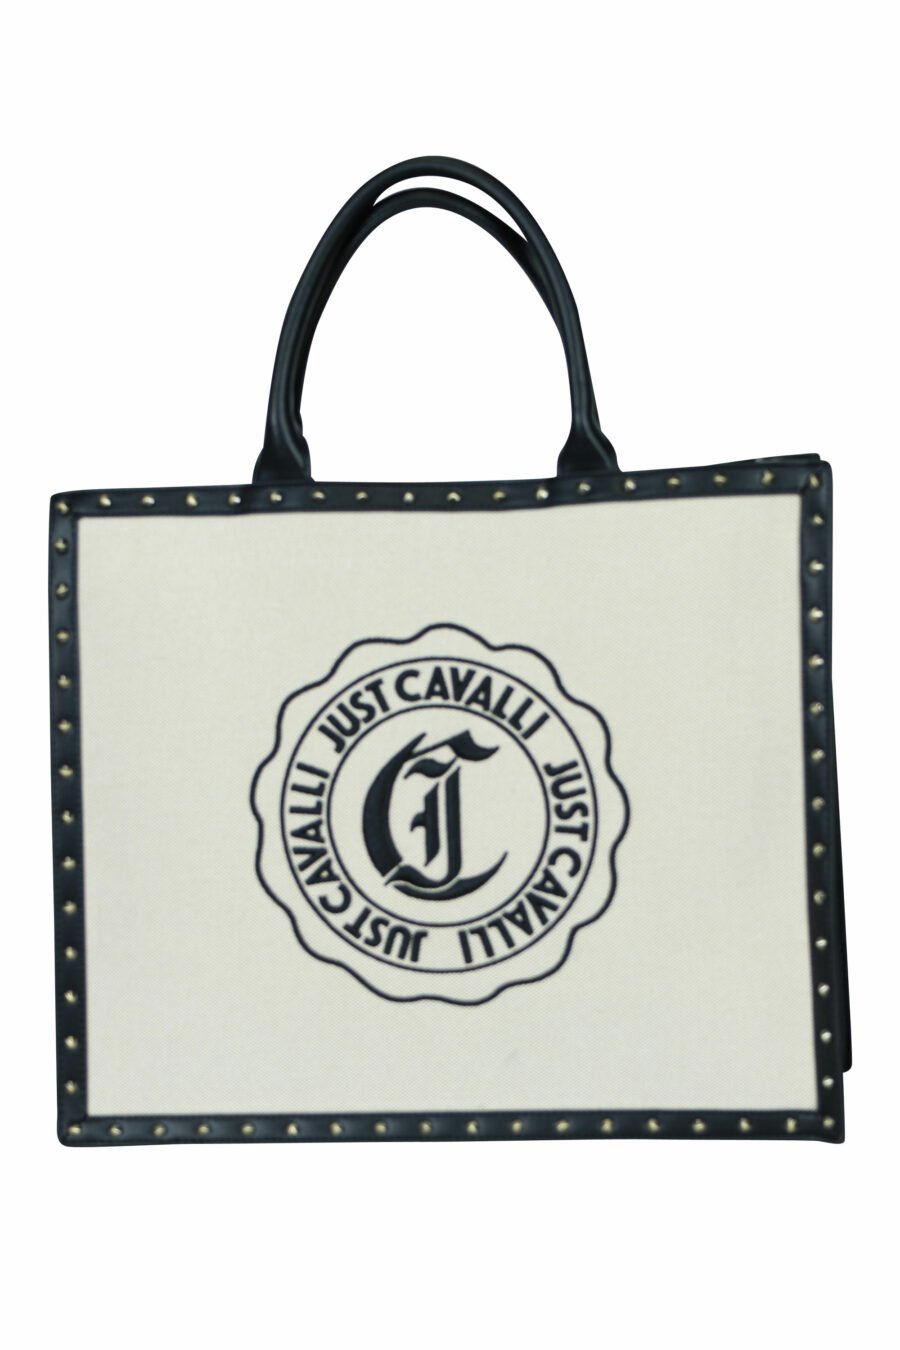 Tote bag black with circular "c" logo - 8052672642431